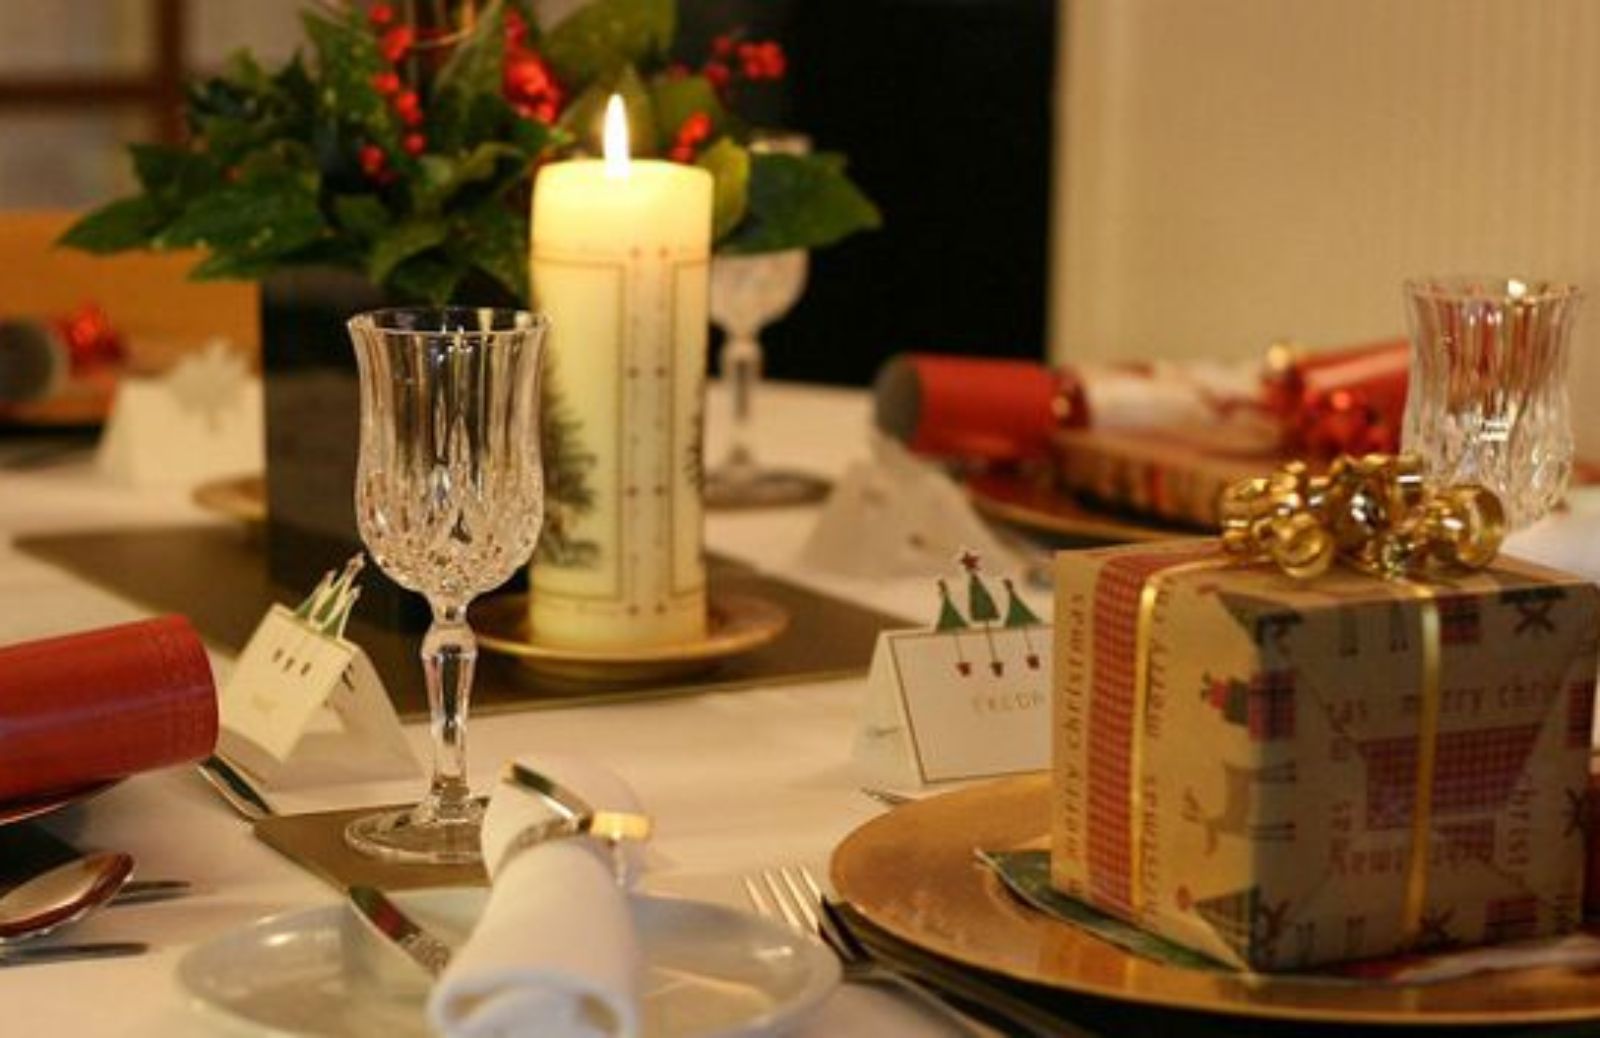 Apparecchiare la tavola a Natale: i segnaposto